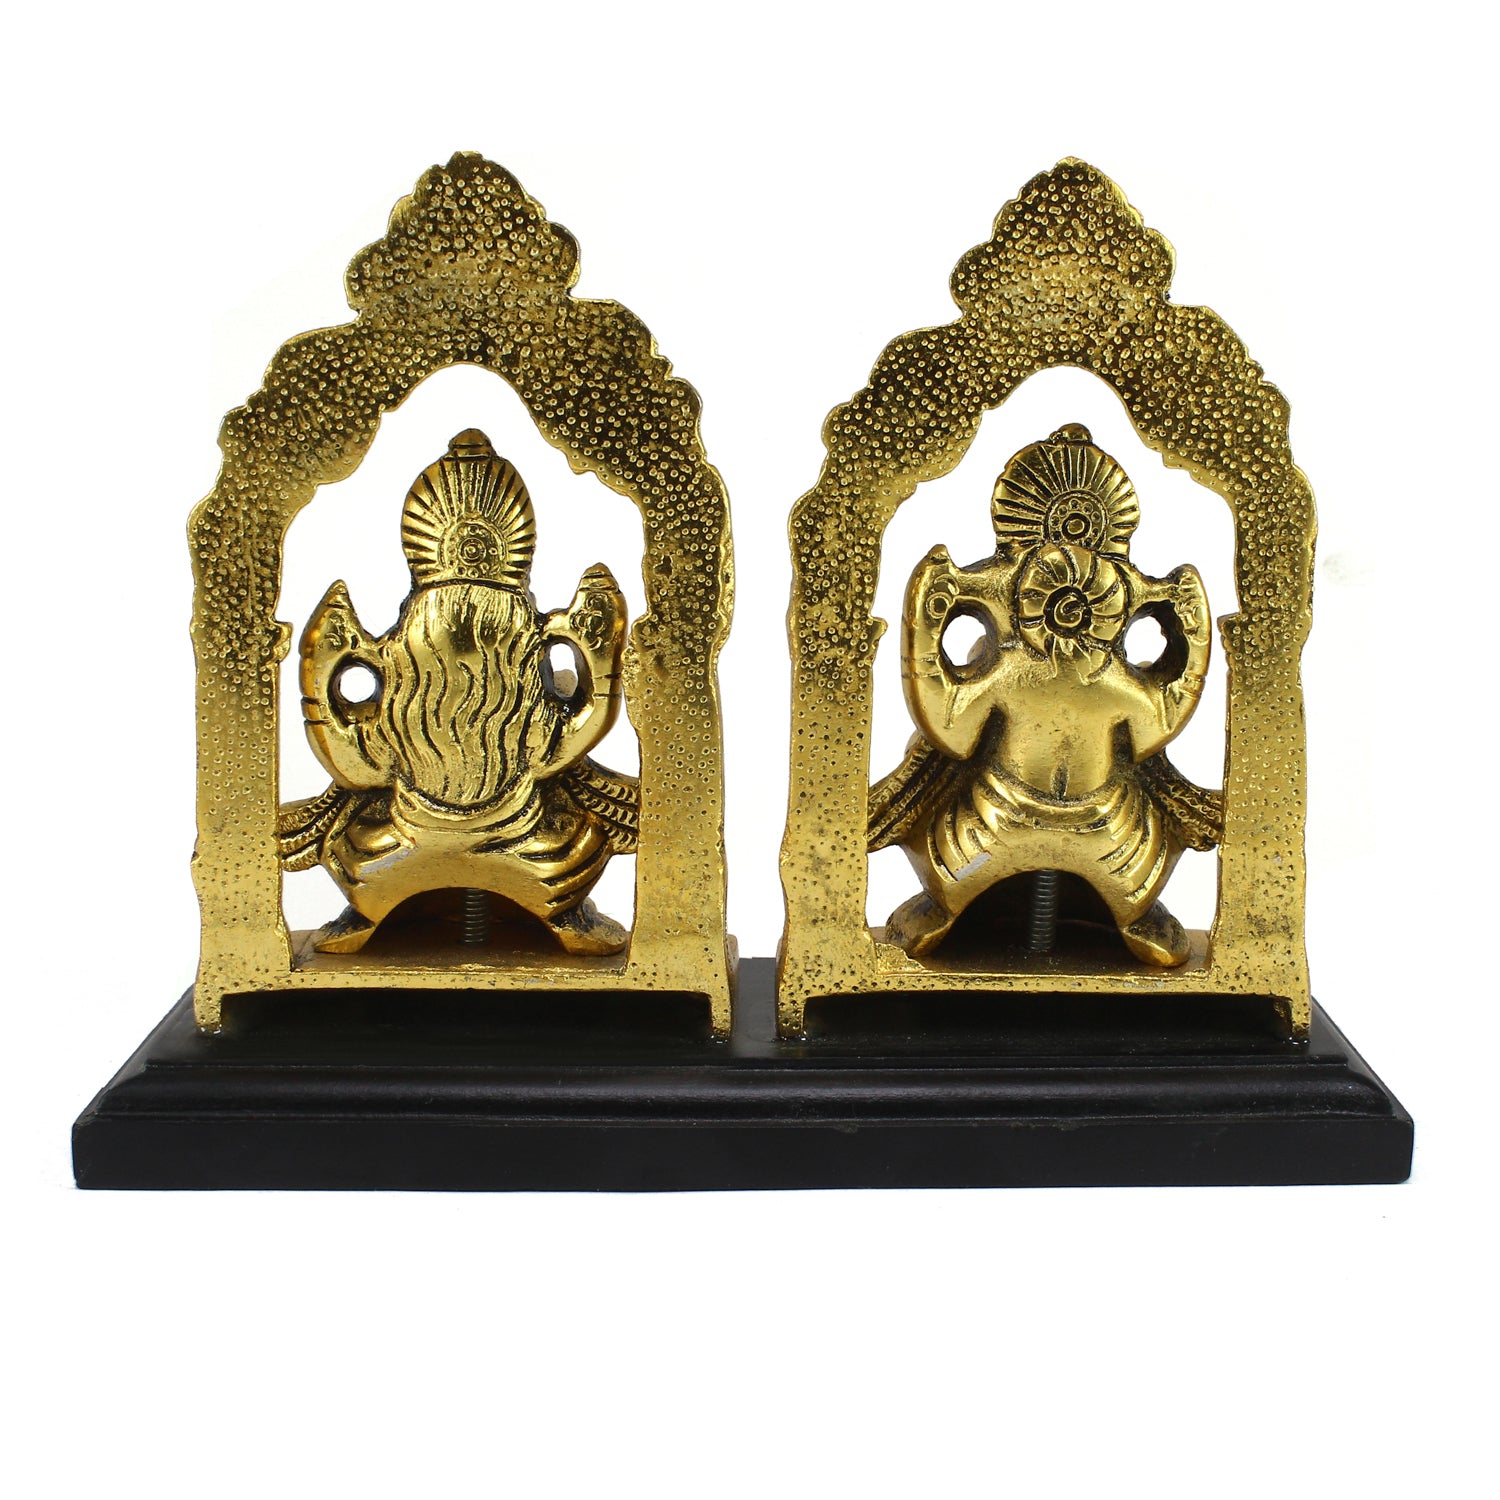 Golden Metal Laxmi Ganesh Murti Religious Idols 5